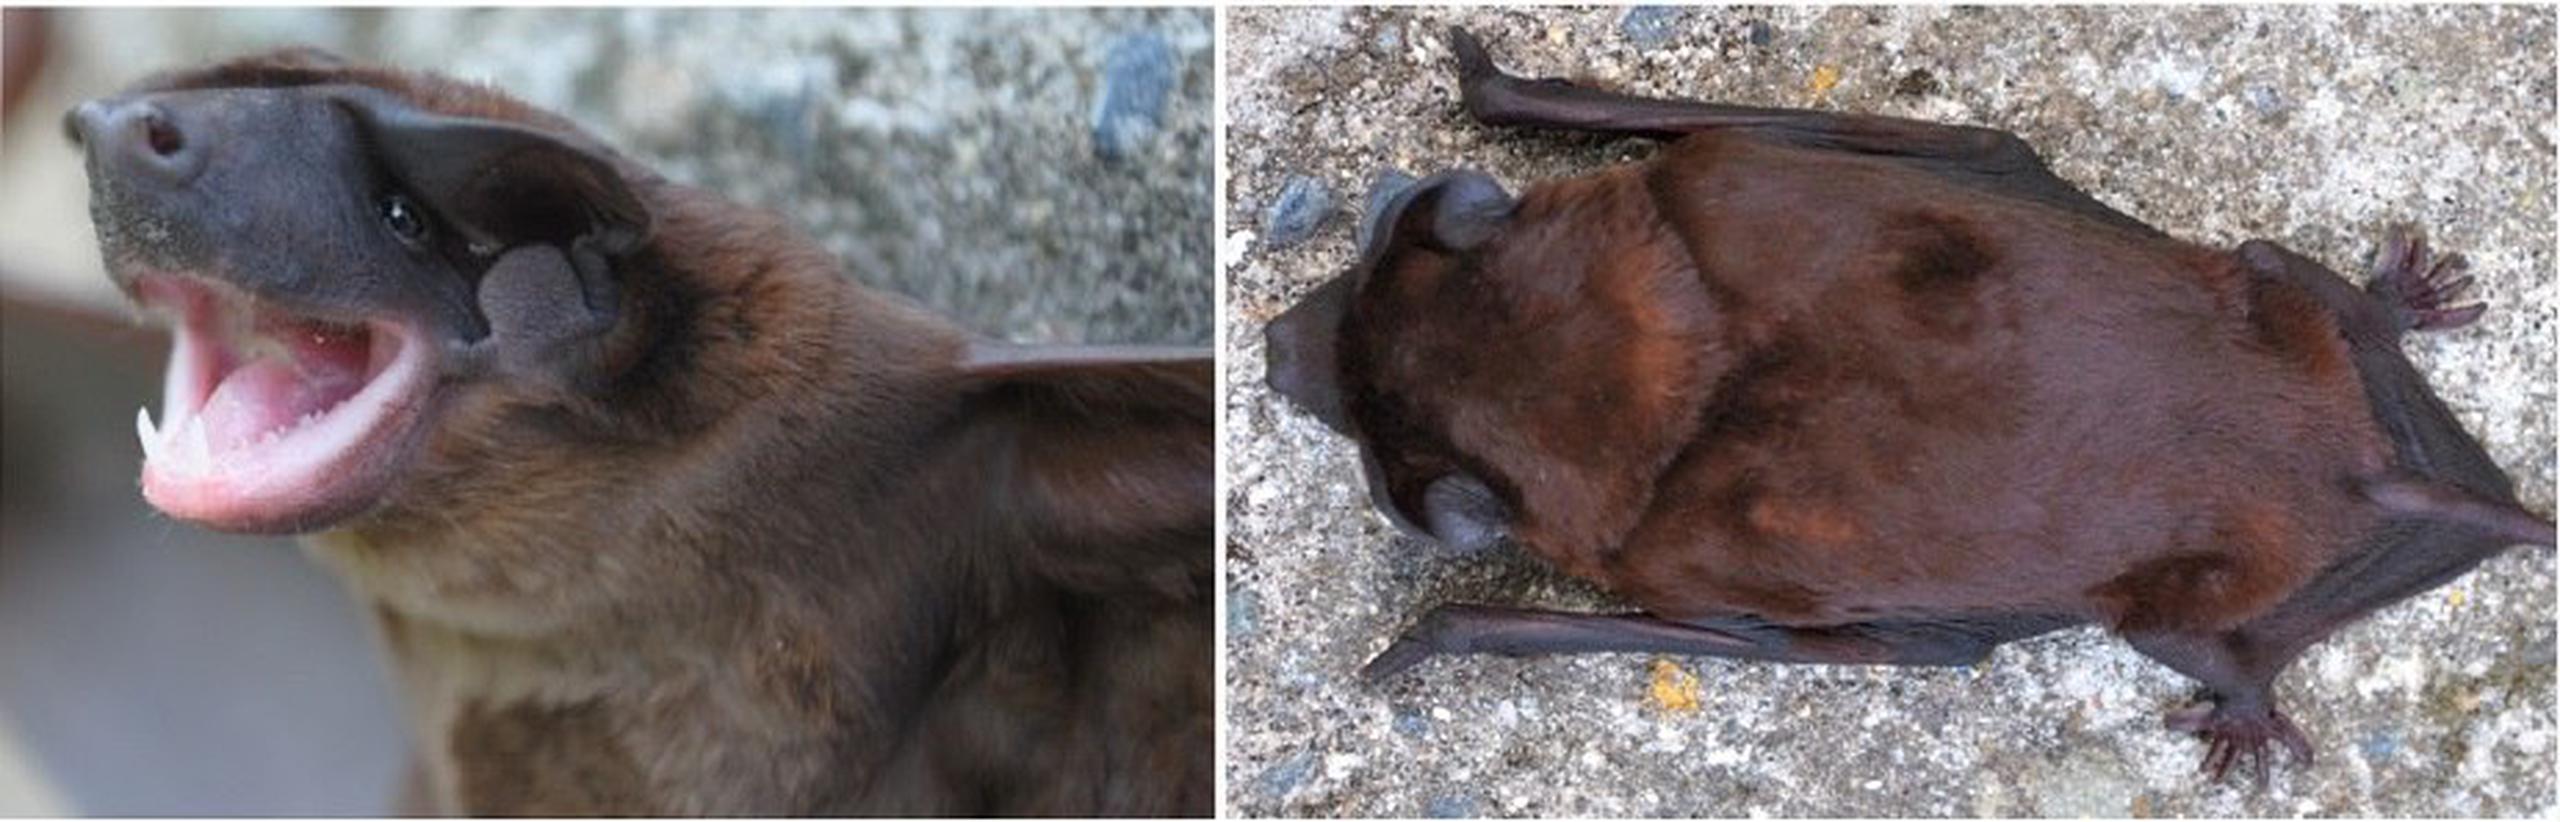 La investigación se basó en datos morfológicos y moleculares para determinar la existencia de una nueva especie Cynomops de murciélagos, que habitan en ecosistemas andinos de los tres países y bautizado como C. kuizha.